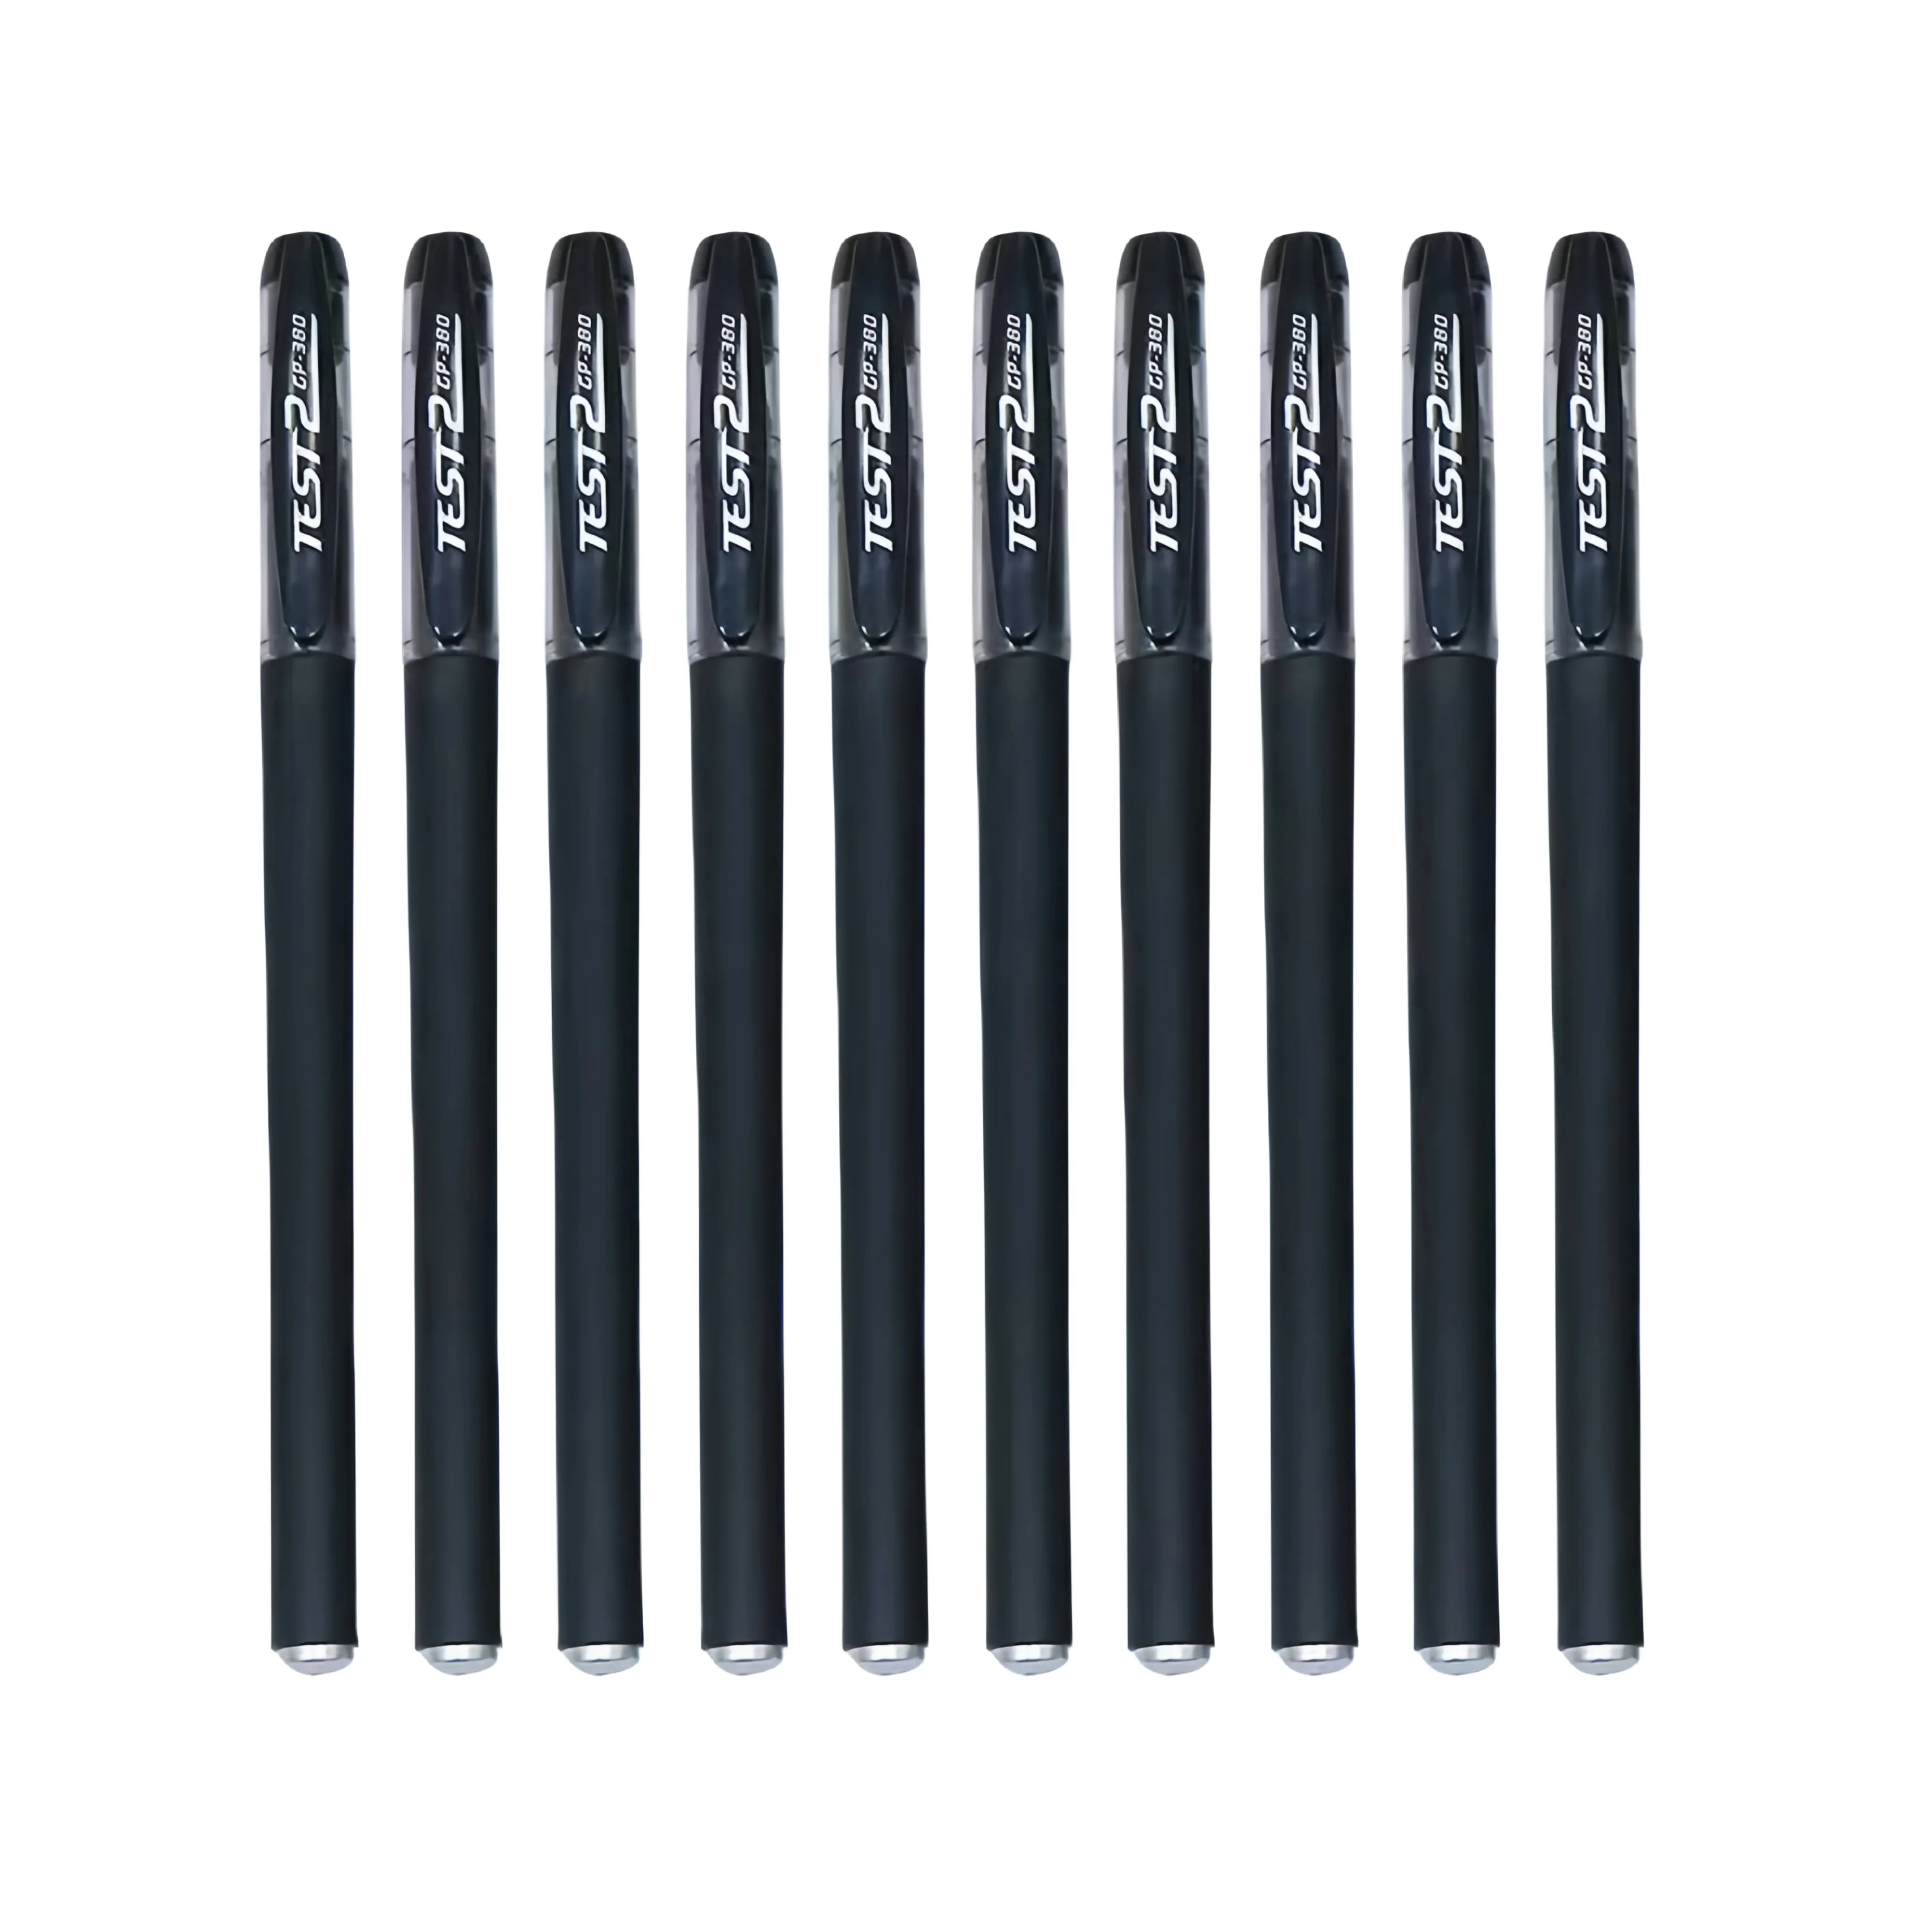 ¡Descuento por bulto! Bolígrafos de gel estilo OEM, escritura suave de 0,5mm, cuerpo de plástico, tinta negra, elegante y personalizado, ideal para promociones